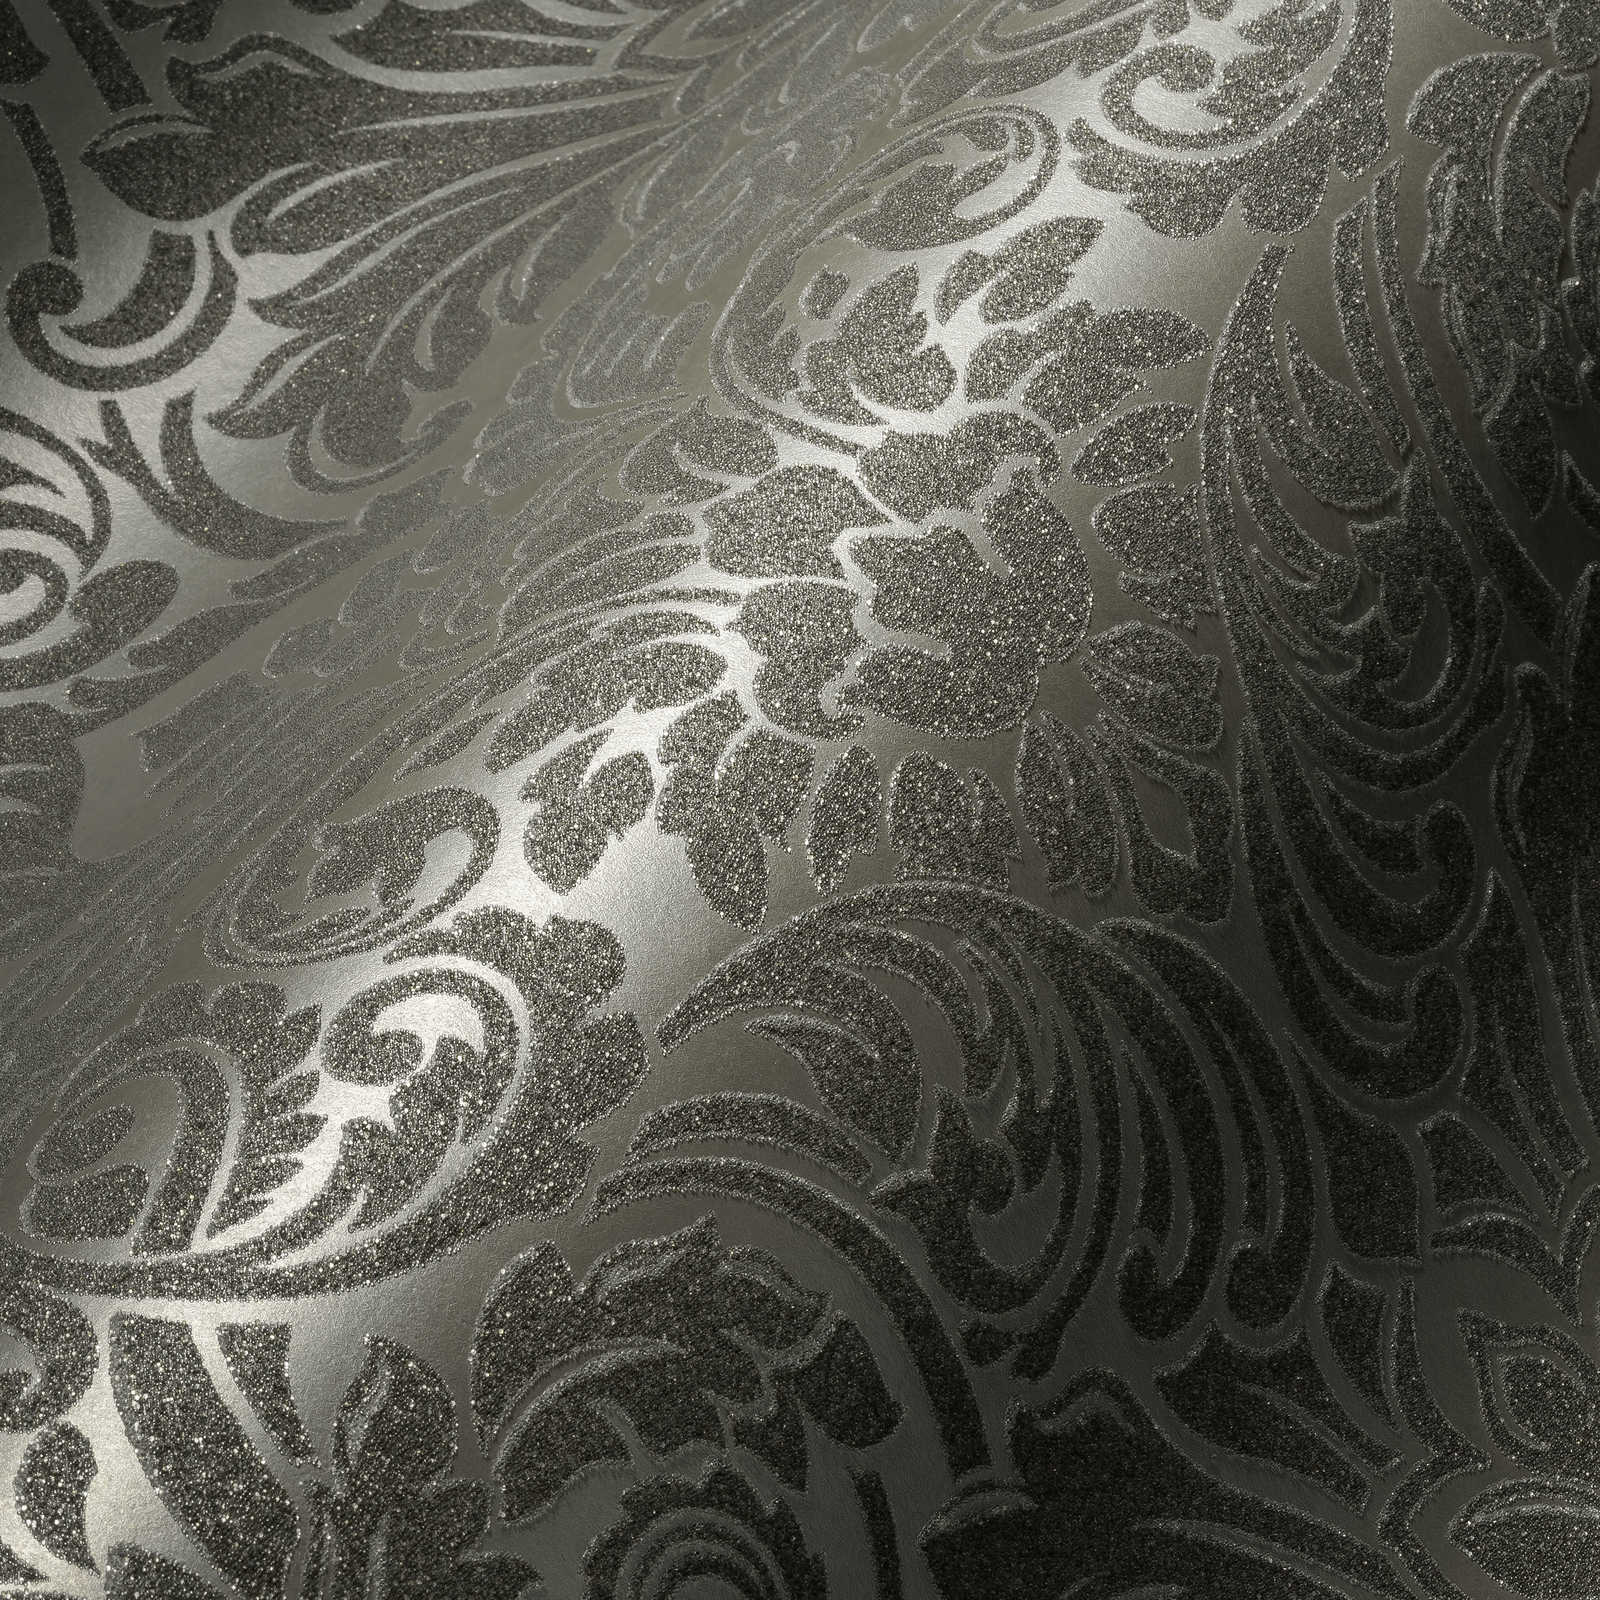             Ornamenteel behang met metallic effect & bloemmotief - zilver, grijs
        